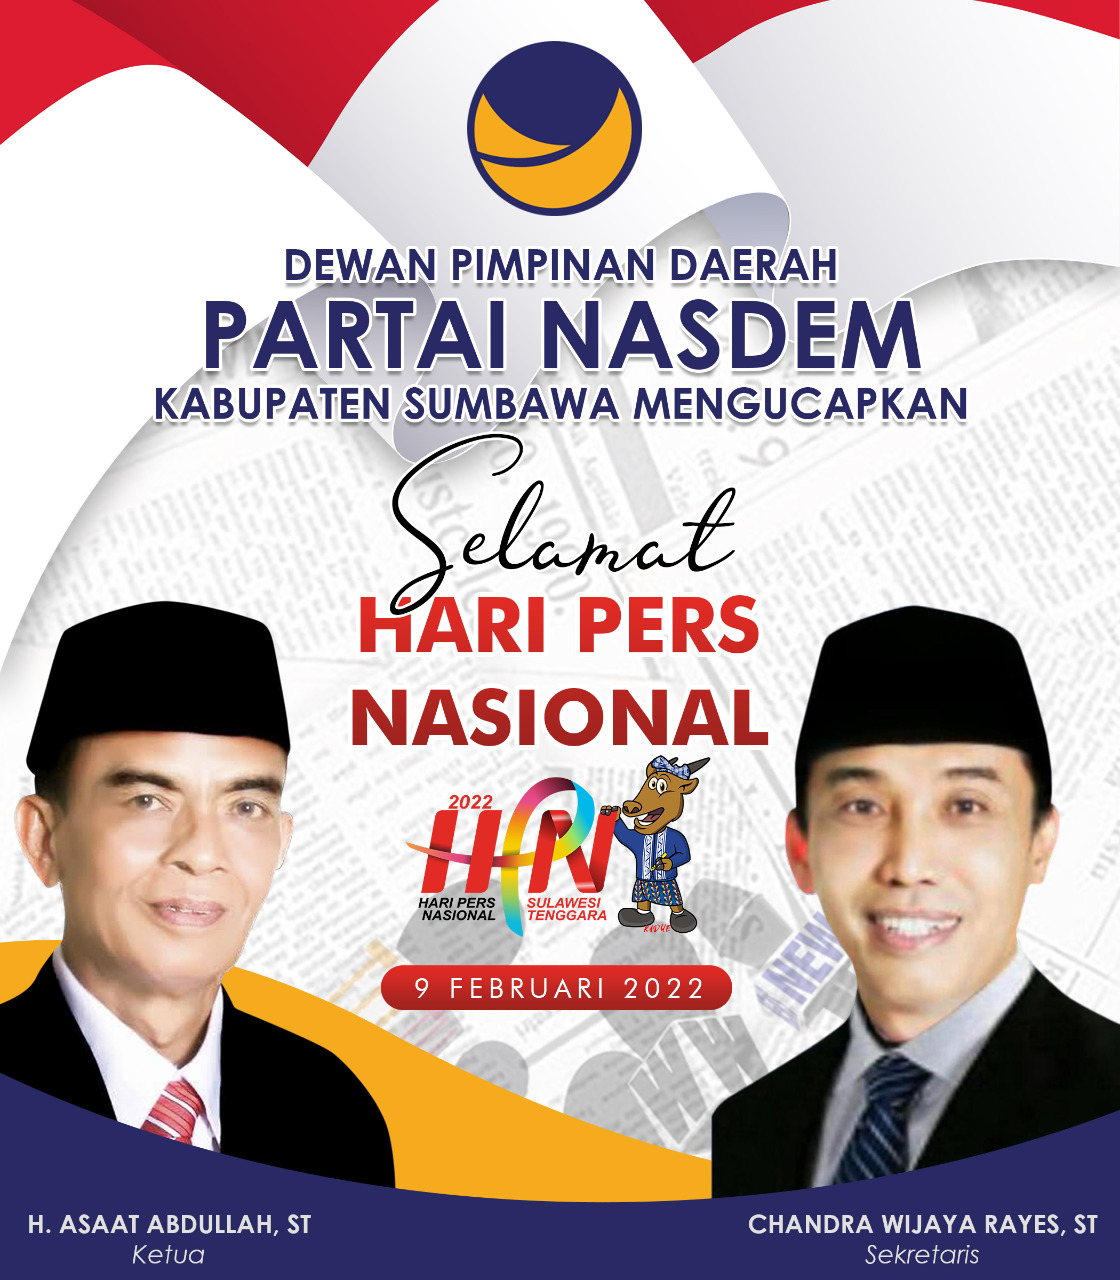 DPD Nasdem Kabupaten Sumbawa Mengucapkan Selamat Hari Pers Nasioanl